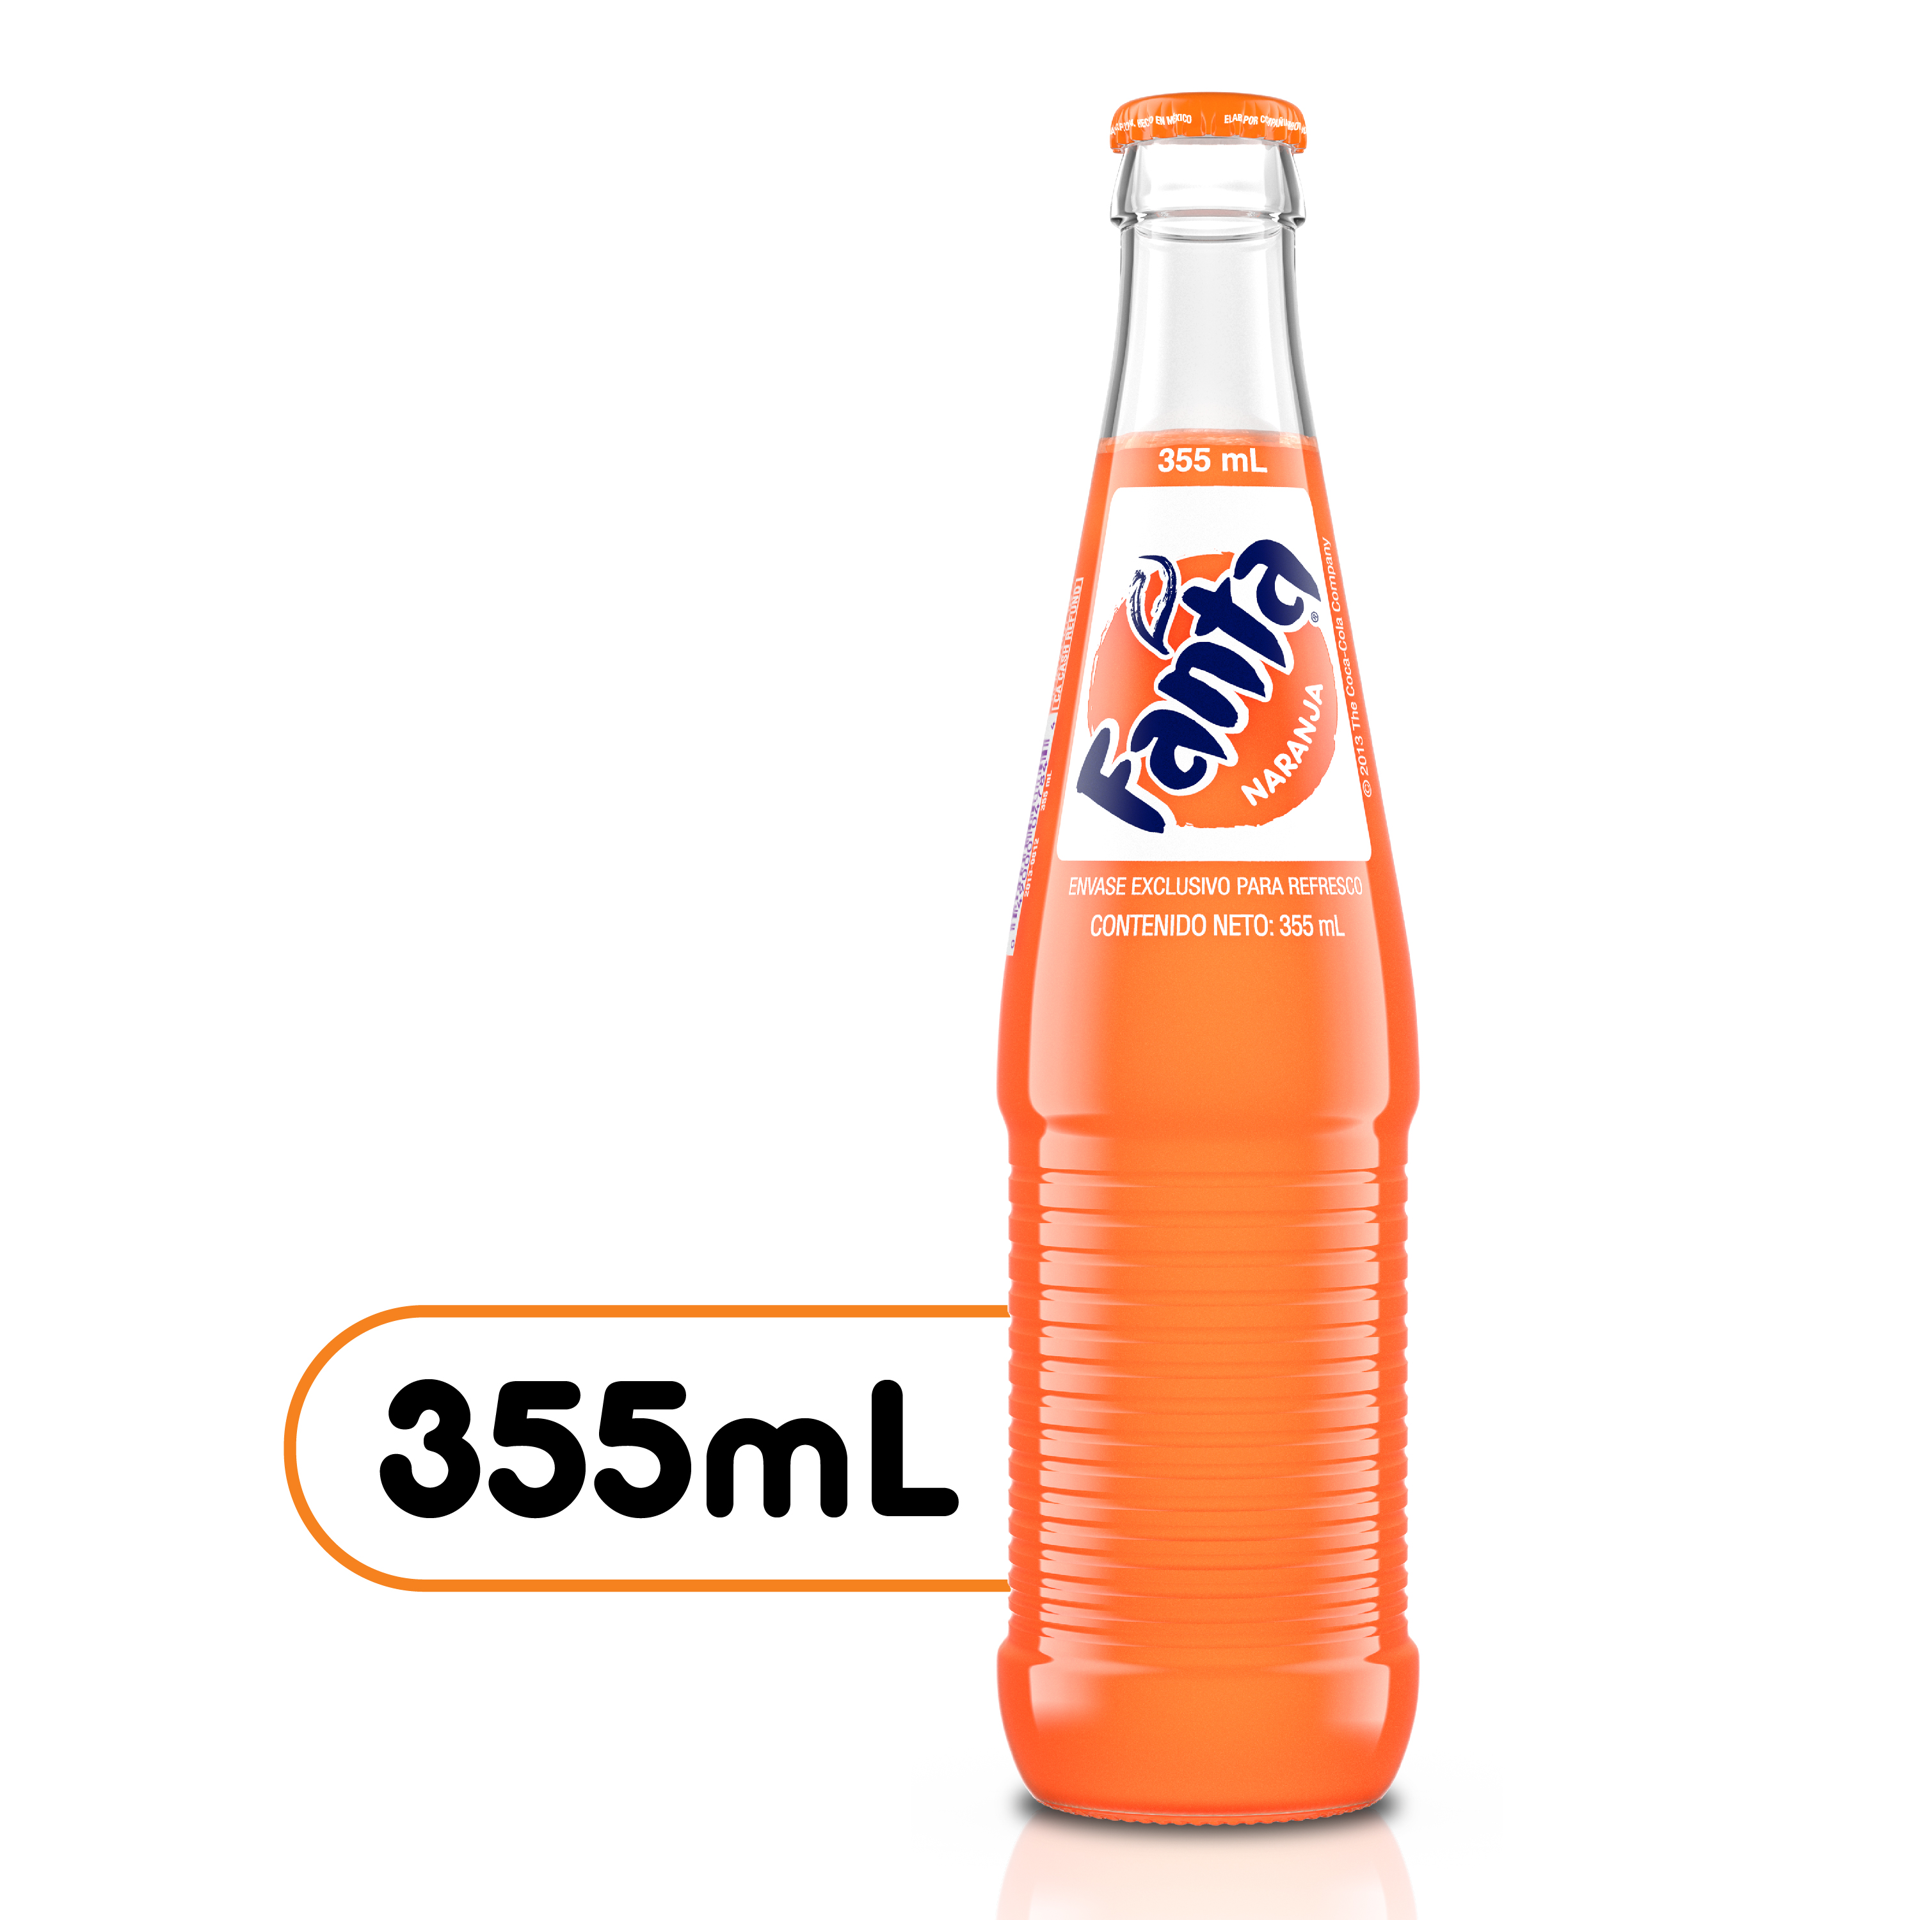 slide 1 of 7, Fanta Orange Mexico Glass Bottle, 355 mL, 355 ml